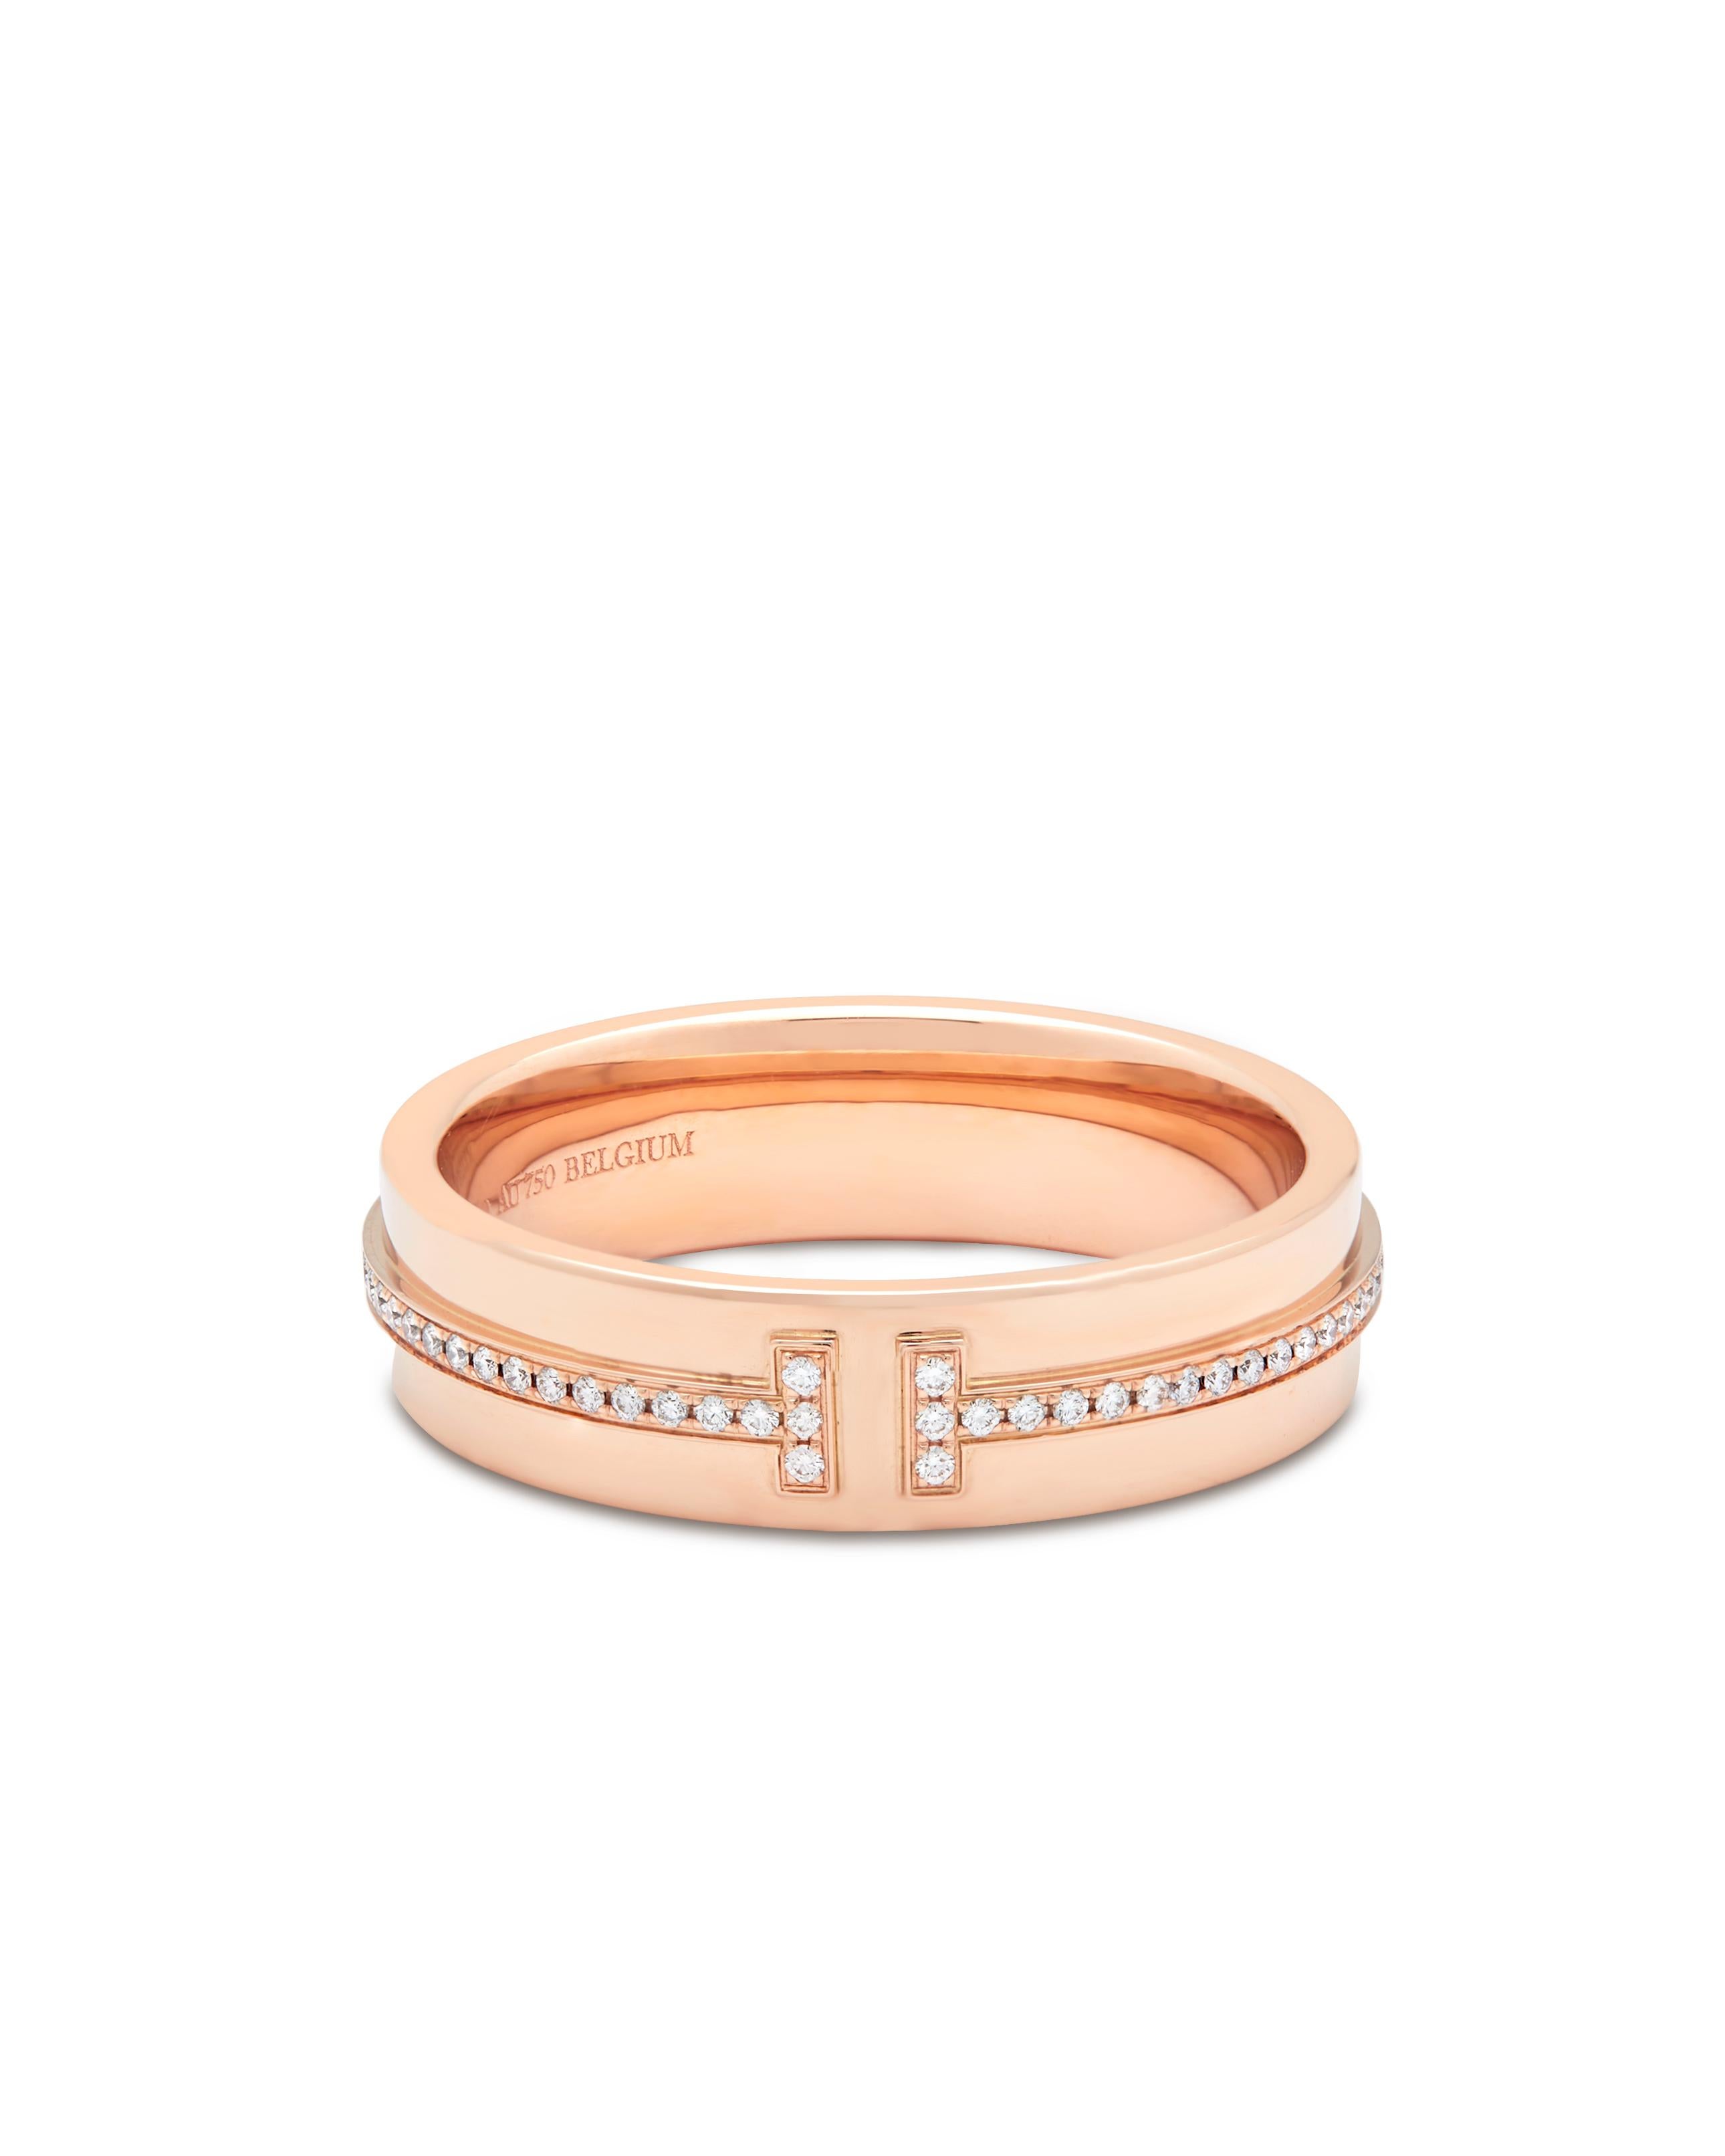 Tiffany Rose Gold Diamant T Ring Modellnummer 60151041

Dieses ikonische Design ist ein modernes Stück, in das T. Diamanten eingelassen sind.

Signiert Tiffany & Co Belguim

18 Karat Roségold mit runden Brillanten
Größe 58 Europäisch: UK Größe Q und